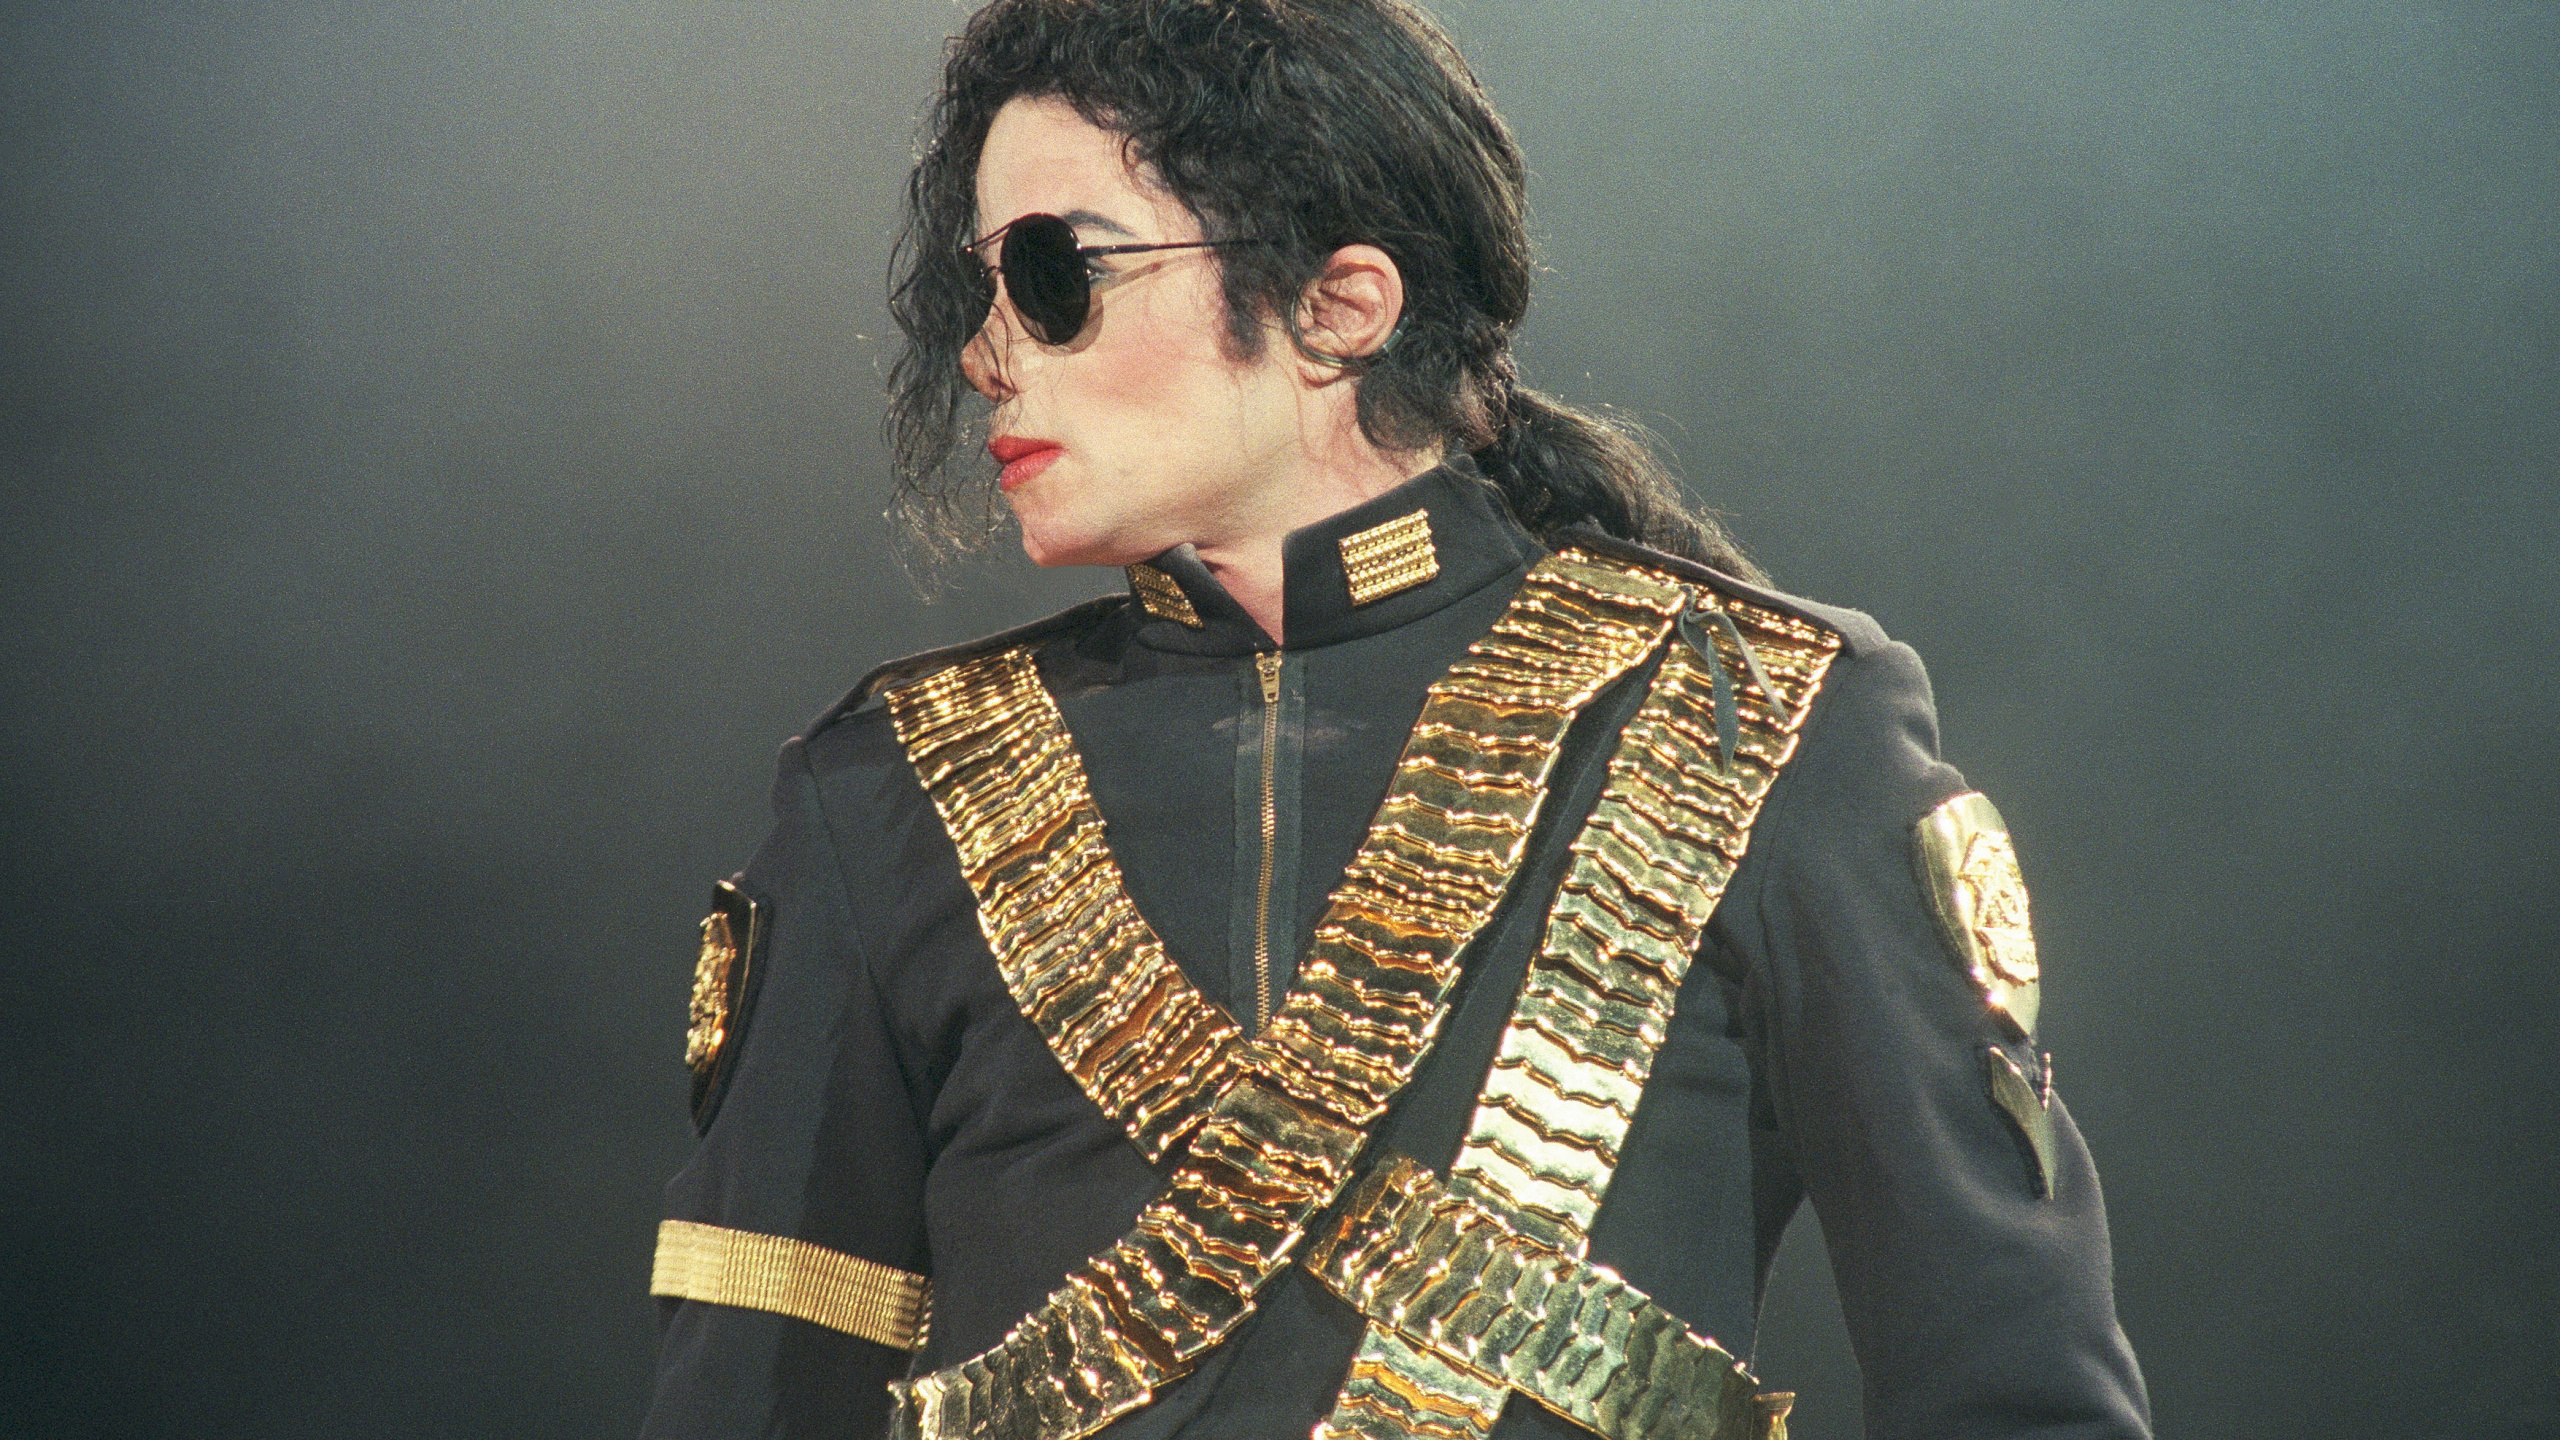 迈克尔*杰克逊, 死的迈克尔*杰克逊, 音乐家, 时尚的设计, 性能 壁纸 2560x1440 允许